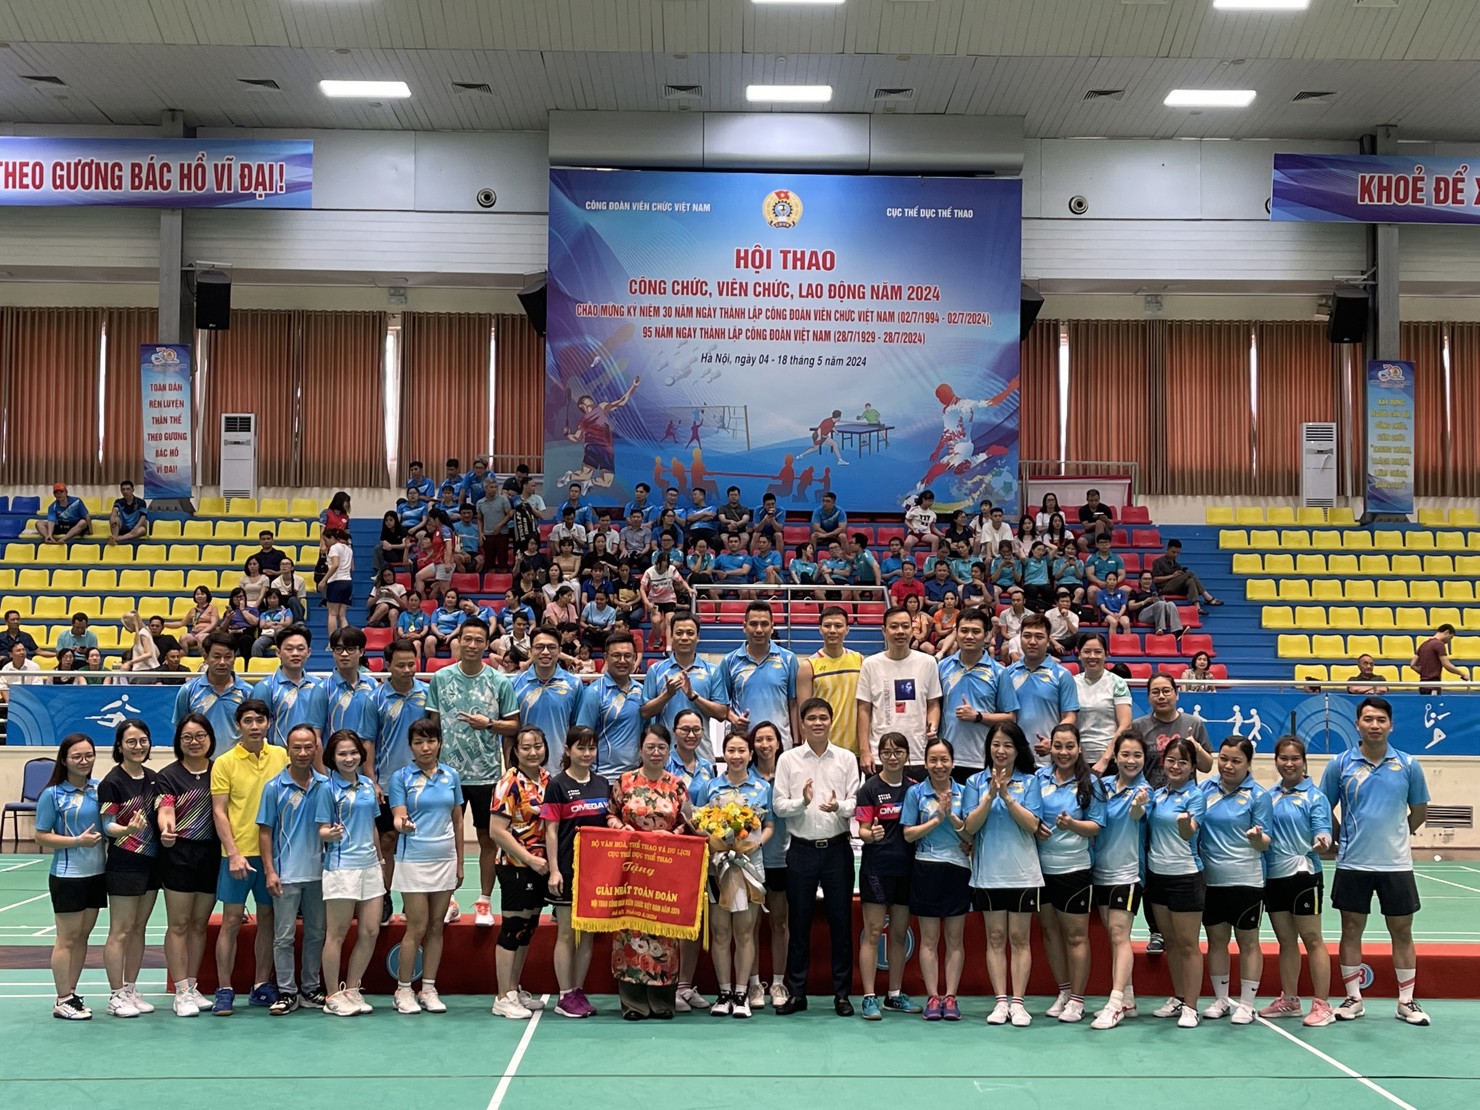 Chủ tịch Công đoàn Bộ Tài chính Ngô Thị Nhung cùng các vận động viên nhận Giải Nhất toàn Đoàn Hội thao Công đoàn Viên chức Việt Nam năm 2024.